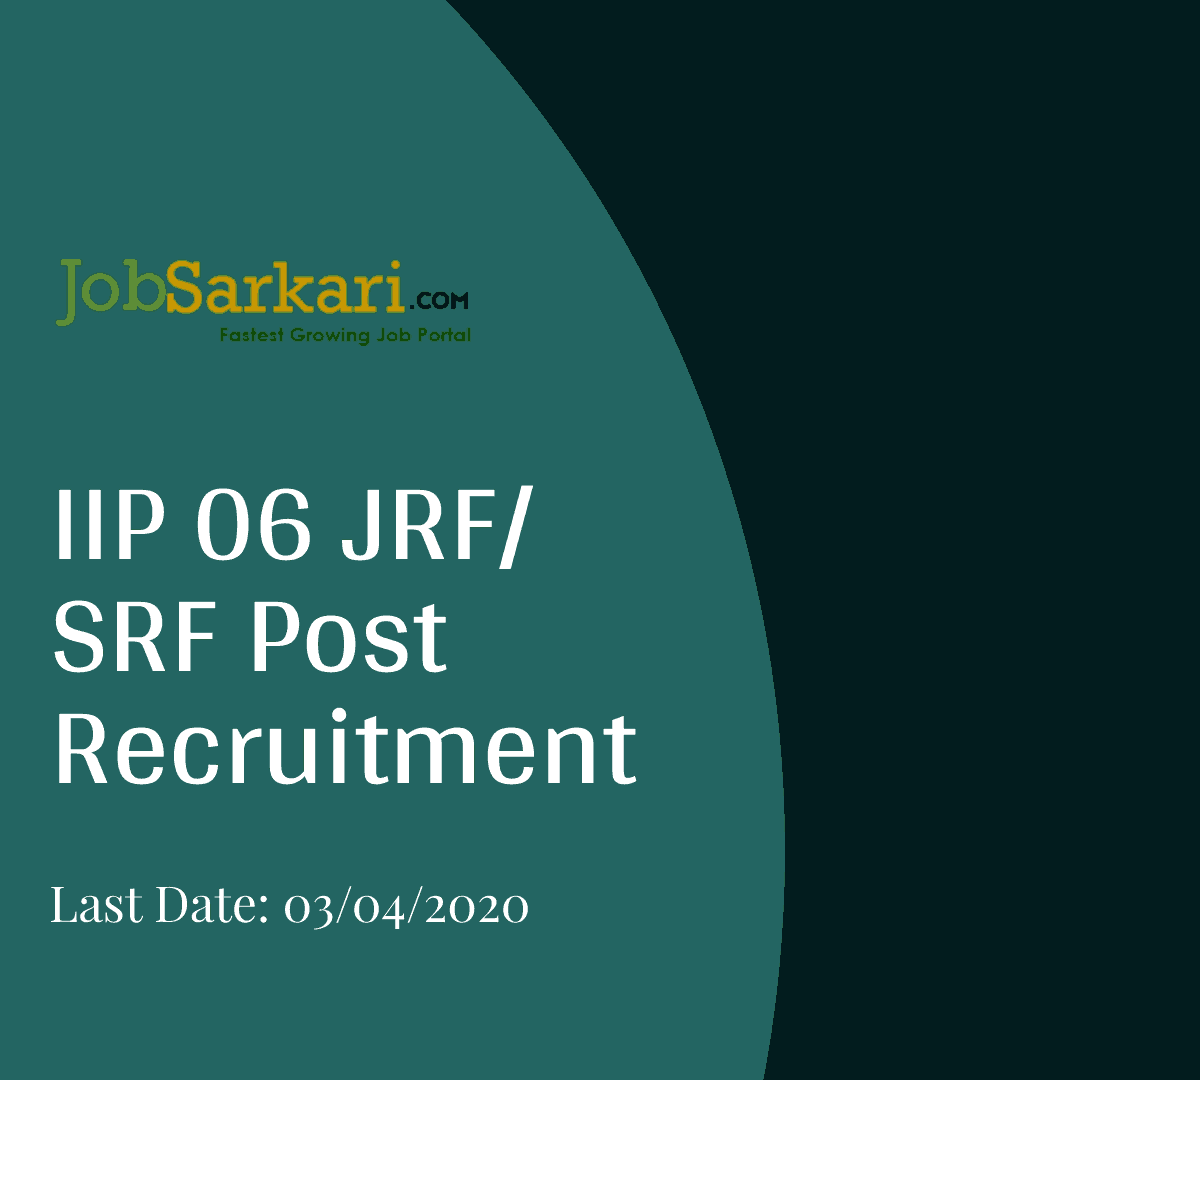 IIP Recruitment 2020 For JRF/ SRF Post